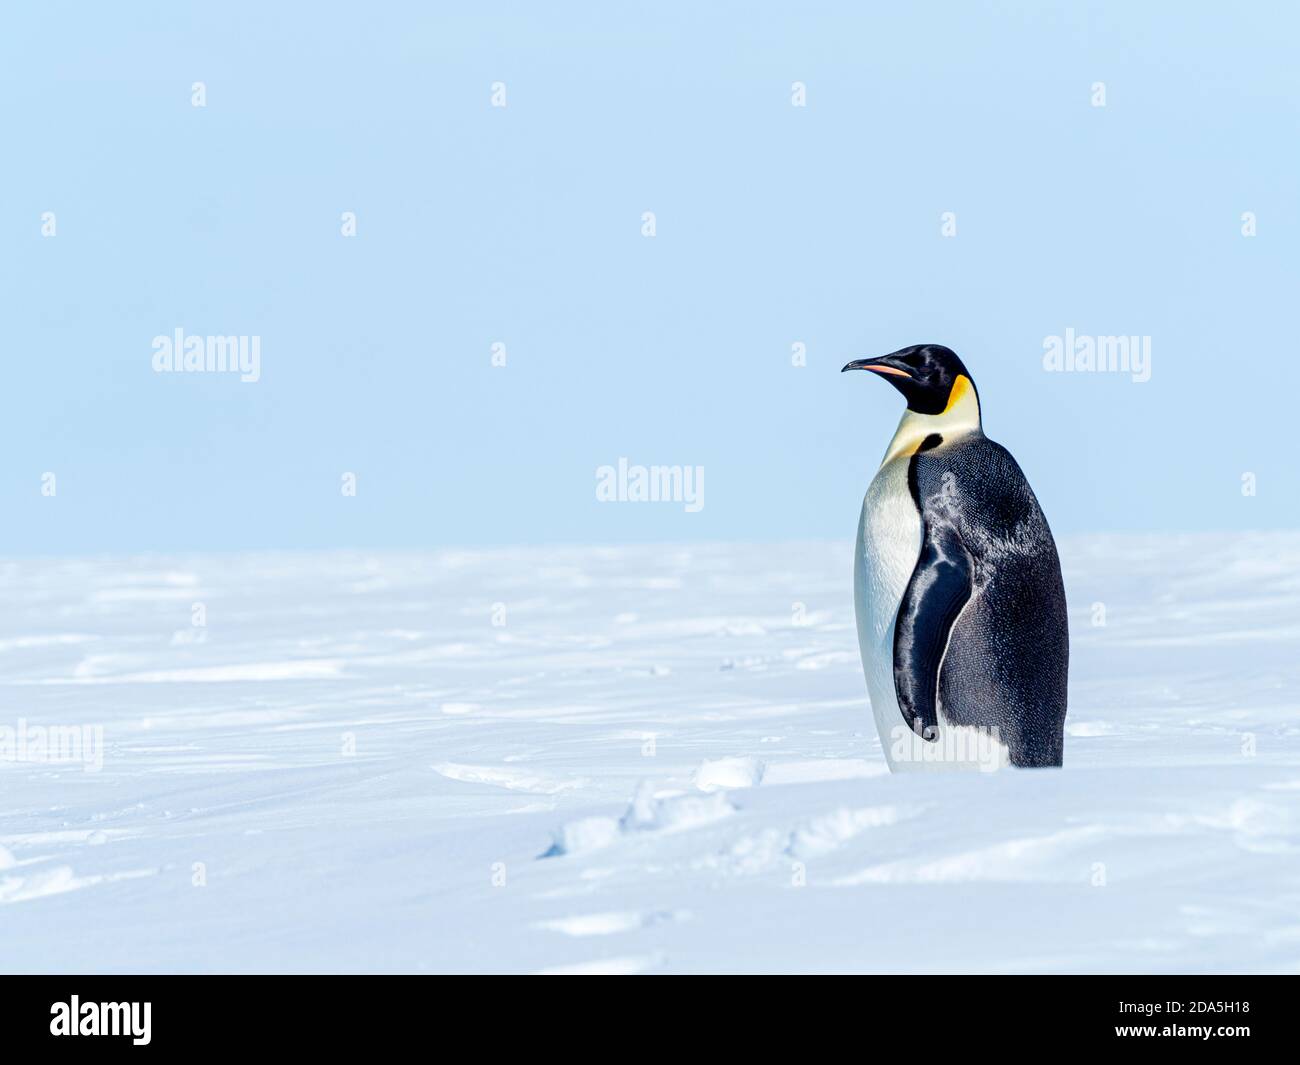 Pingouin empereur adulte, Aptenodytes forsteri, transporté sur glace près de Snow Hill Island, Mer de Weddell, Antarctique. Banque D'Images